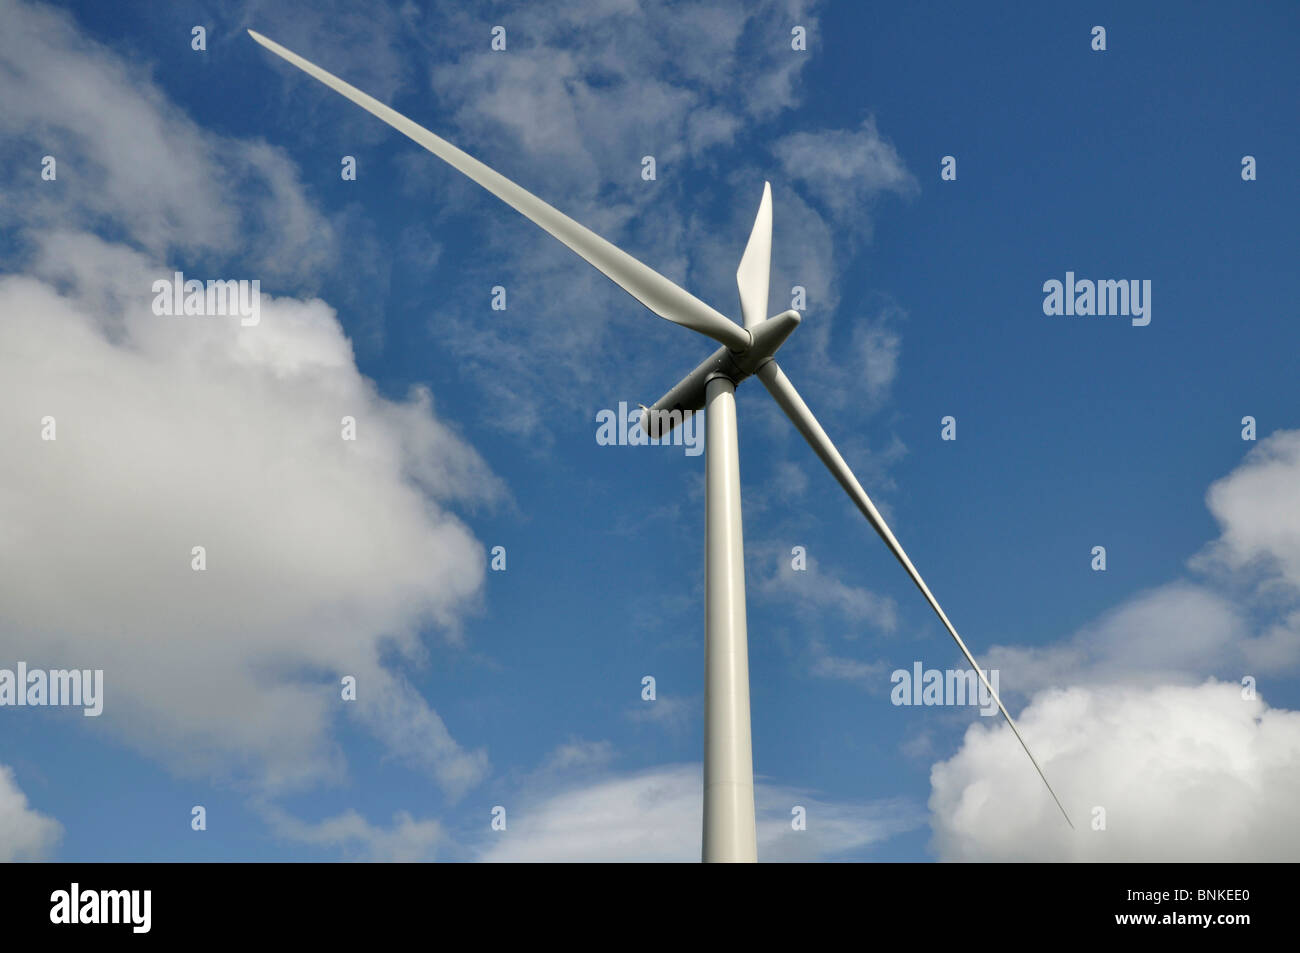 Wind turbine, Whitelee wind farm, near Glasgow, Scotland Stock Photo